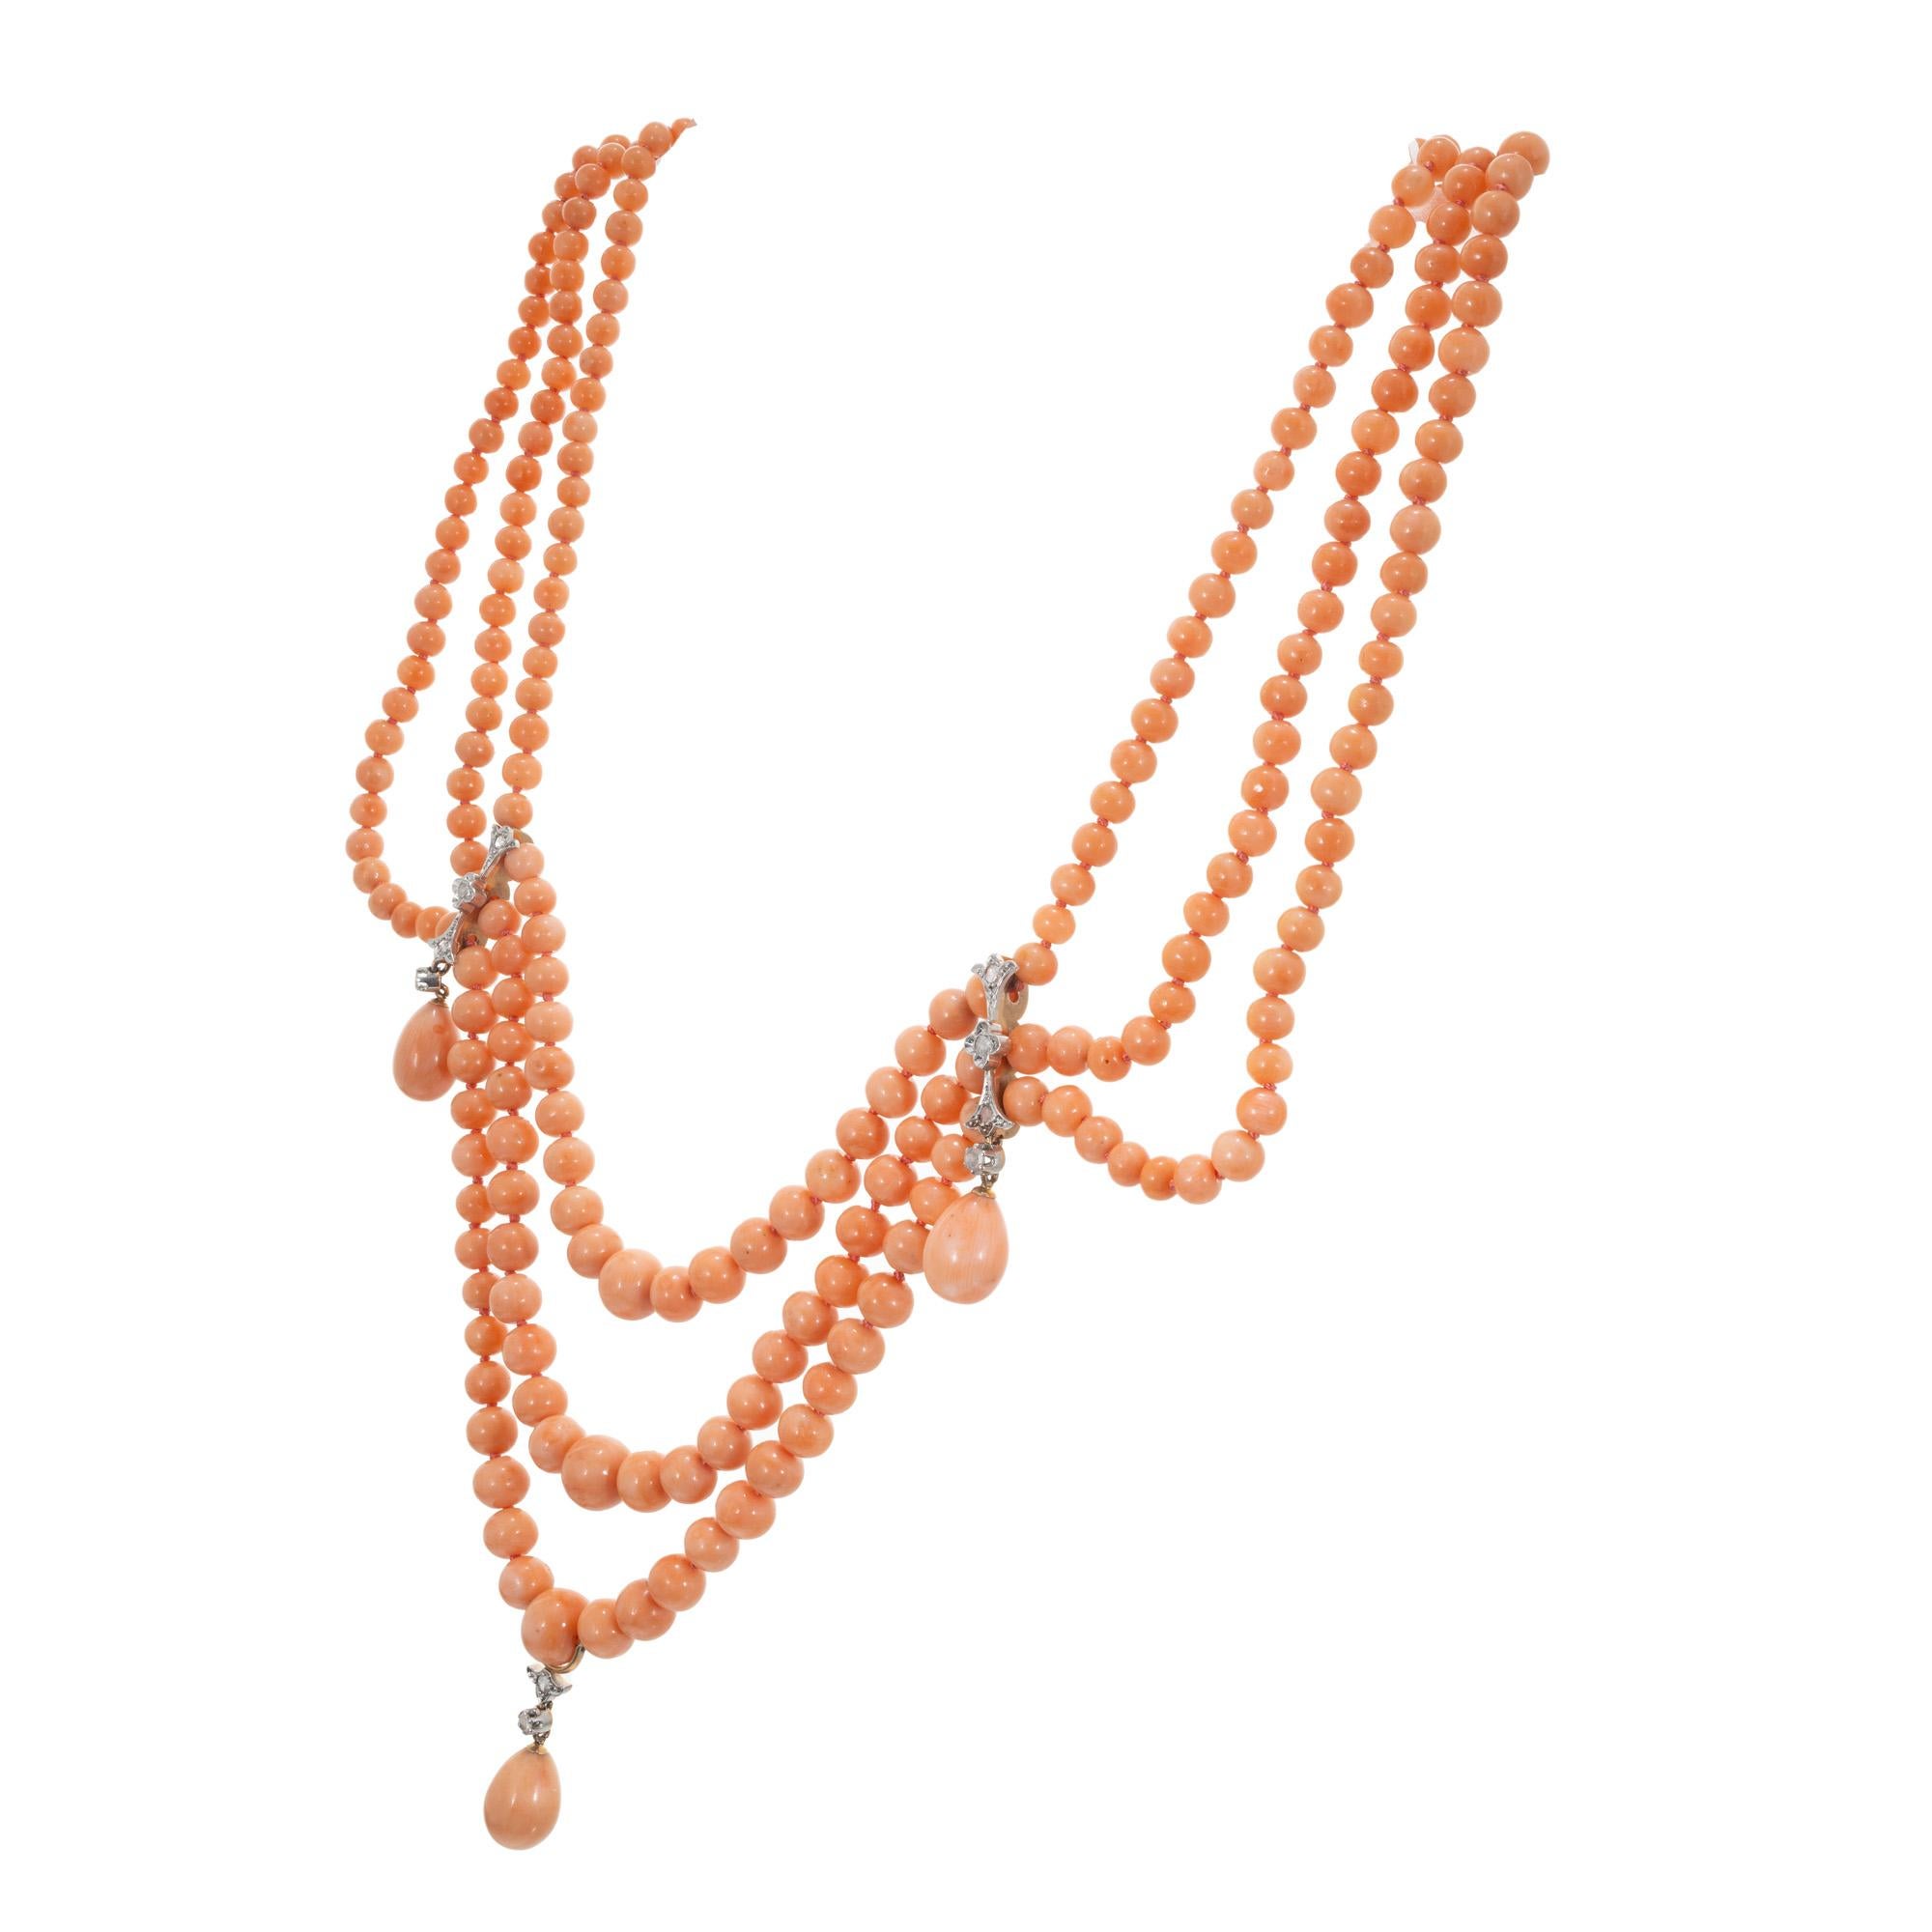 Späte 1800's viktorianischen drei Strang Korallen Perlen Halskette. Diese Halskette zeigt die strahlende Schönheit der Koralle, die für ihre verführerischen Farbtöne und ihre einzigartige Struktur bekannt ist. Die drei Korallenstränge aus gut